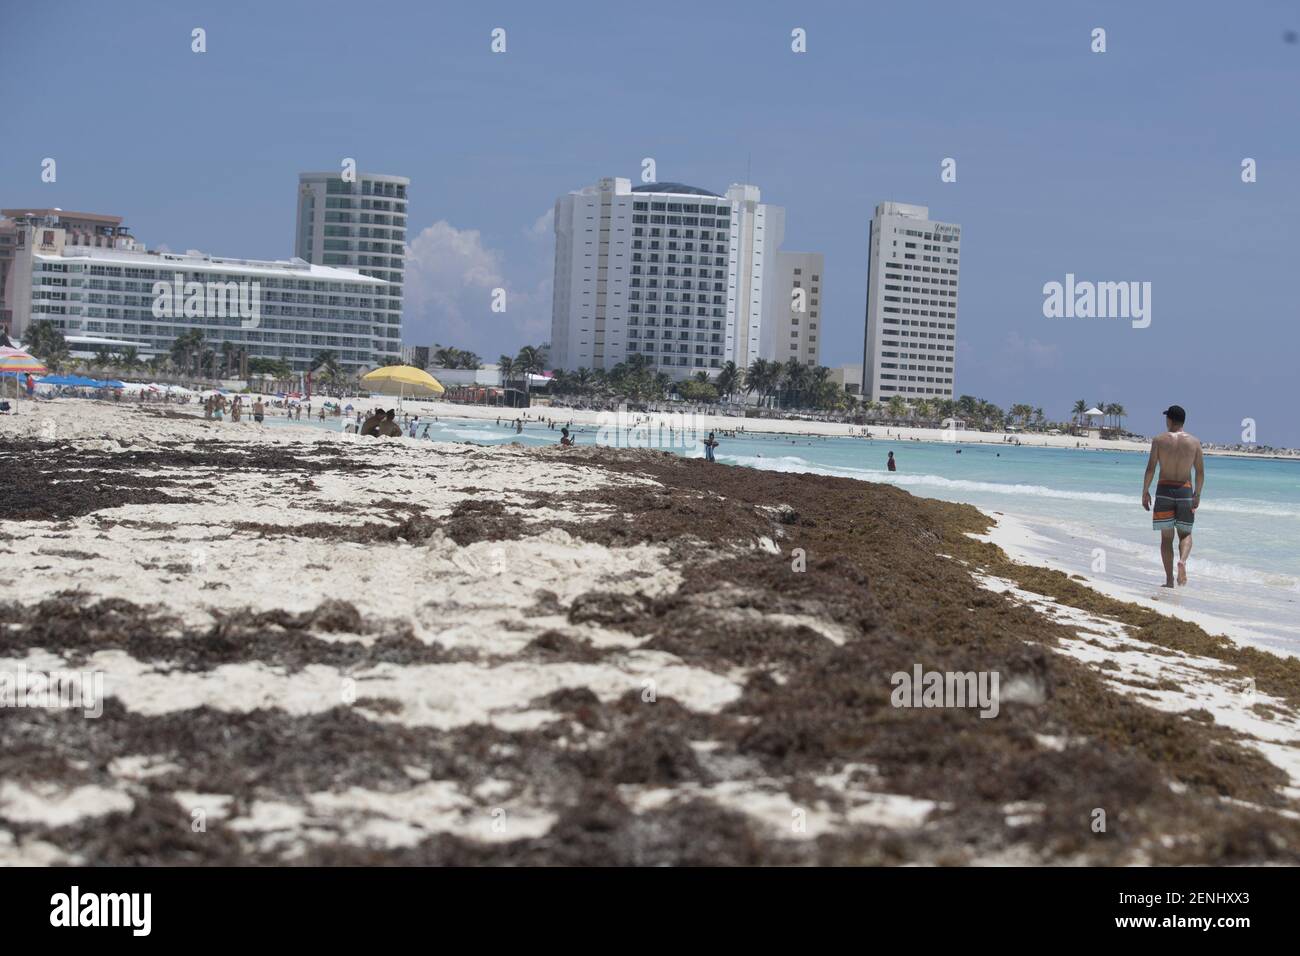 CANCUN, MESSICO - AGOSTO 24: I turisti sono visti sulla spiaggia  contaminata da sargassum, un problema ambientale che ha fatto  l'inquinamento delle spiagge dei Caraibi messicani avviso il 24 agosto 2019  a